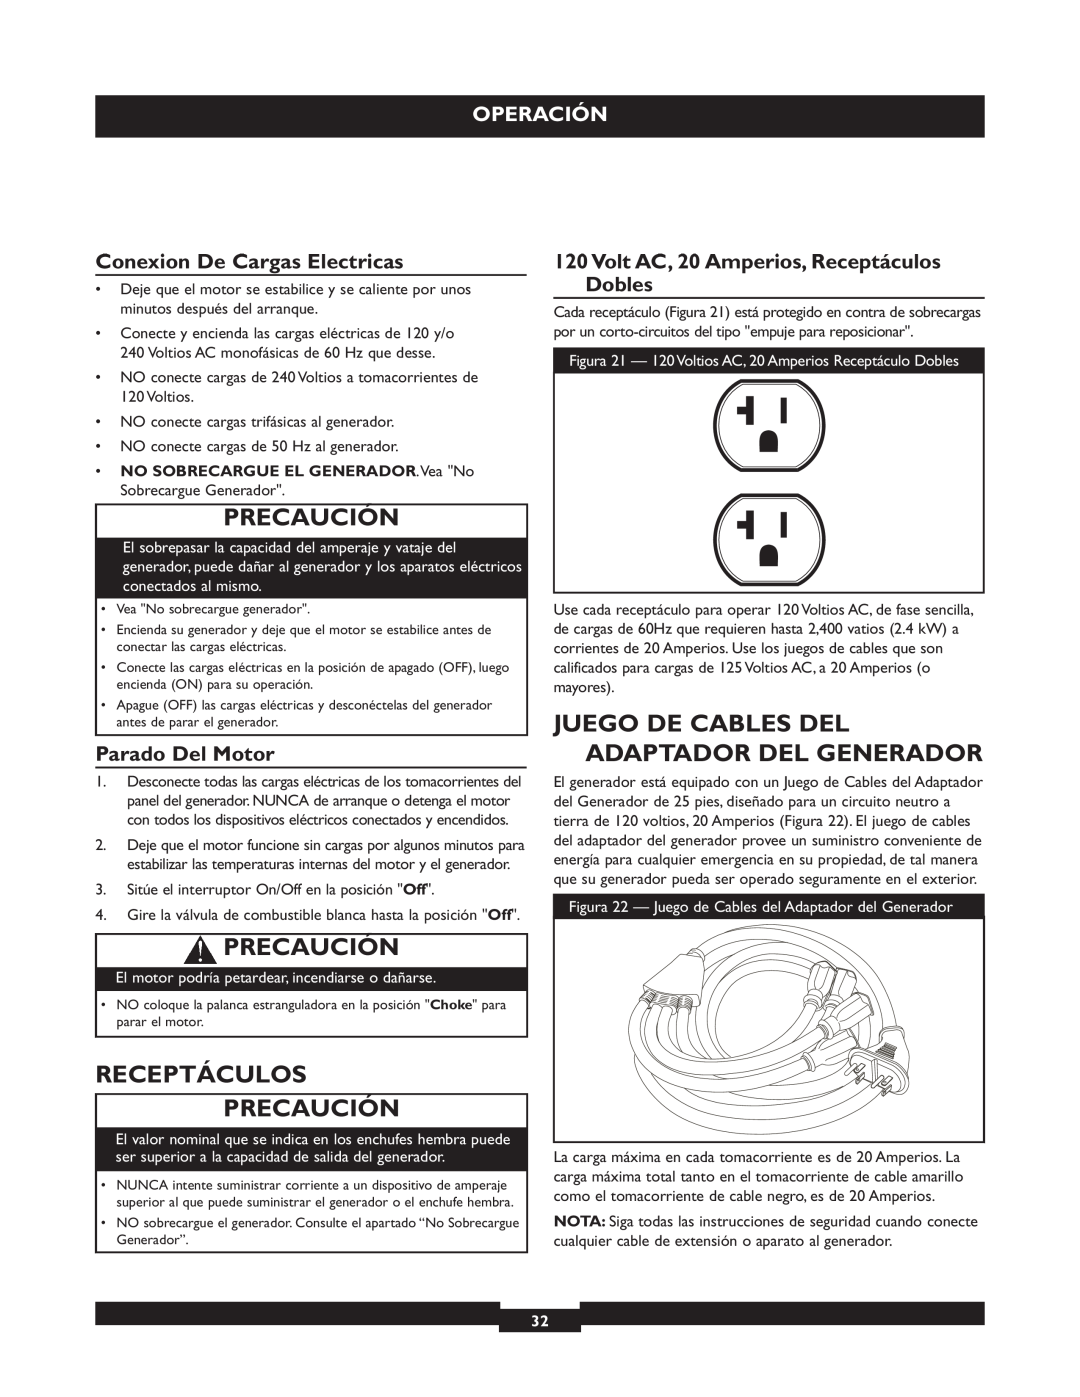 Briggs & Stratton 30219 manual Juego De Cables Del Adaptador Del Generador, Receptáculos Precaución, Operación 